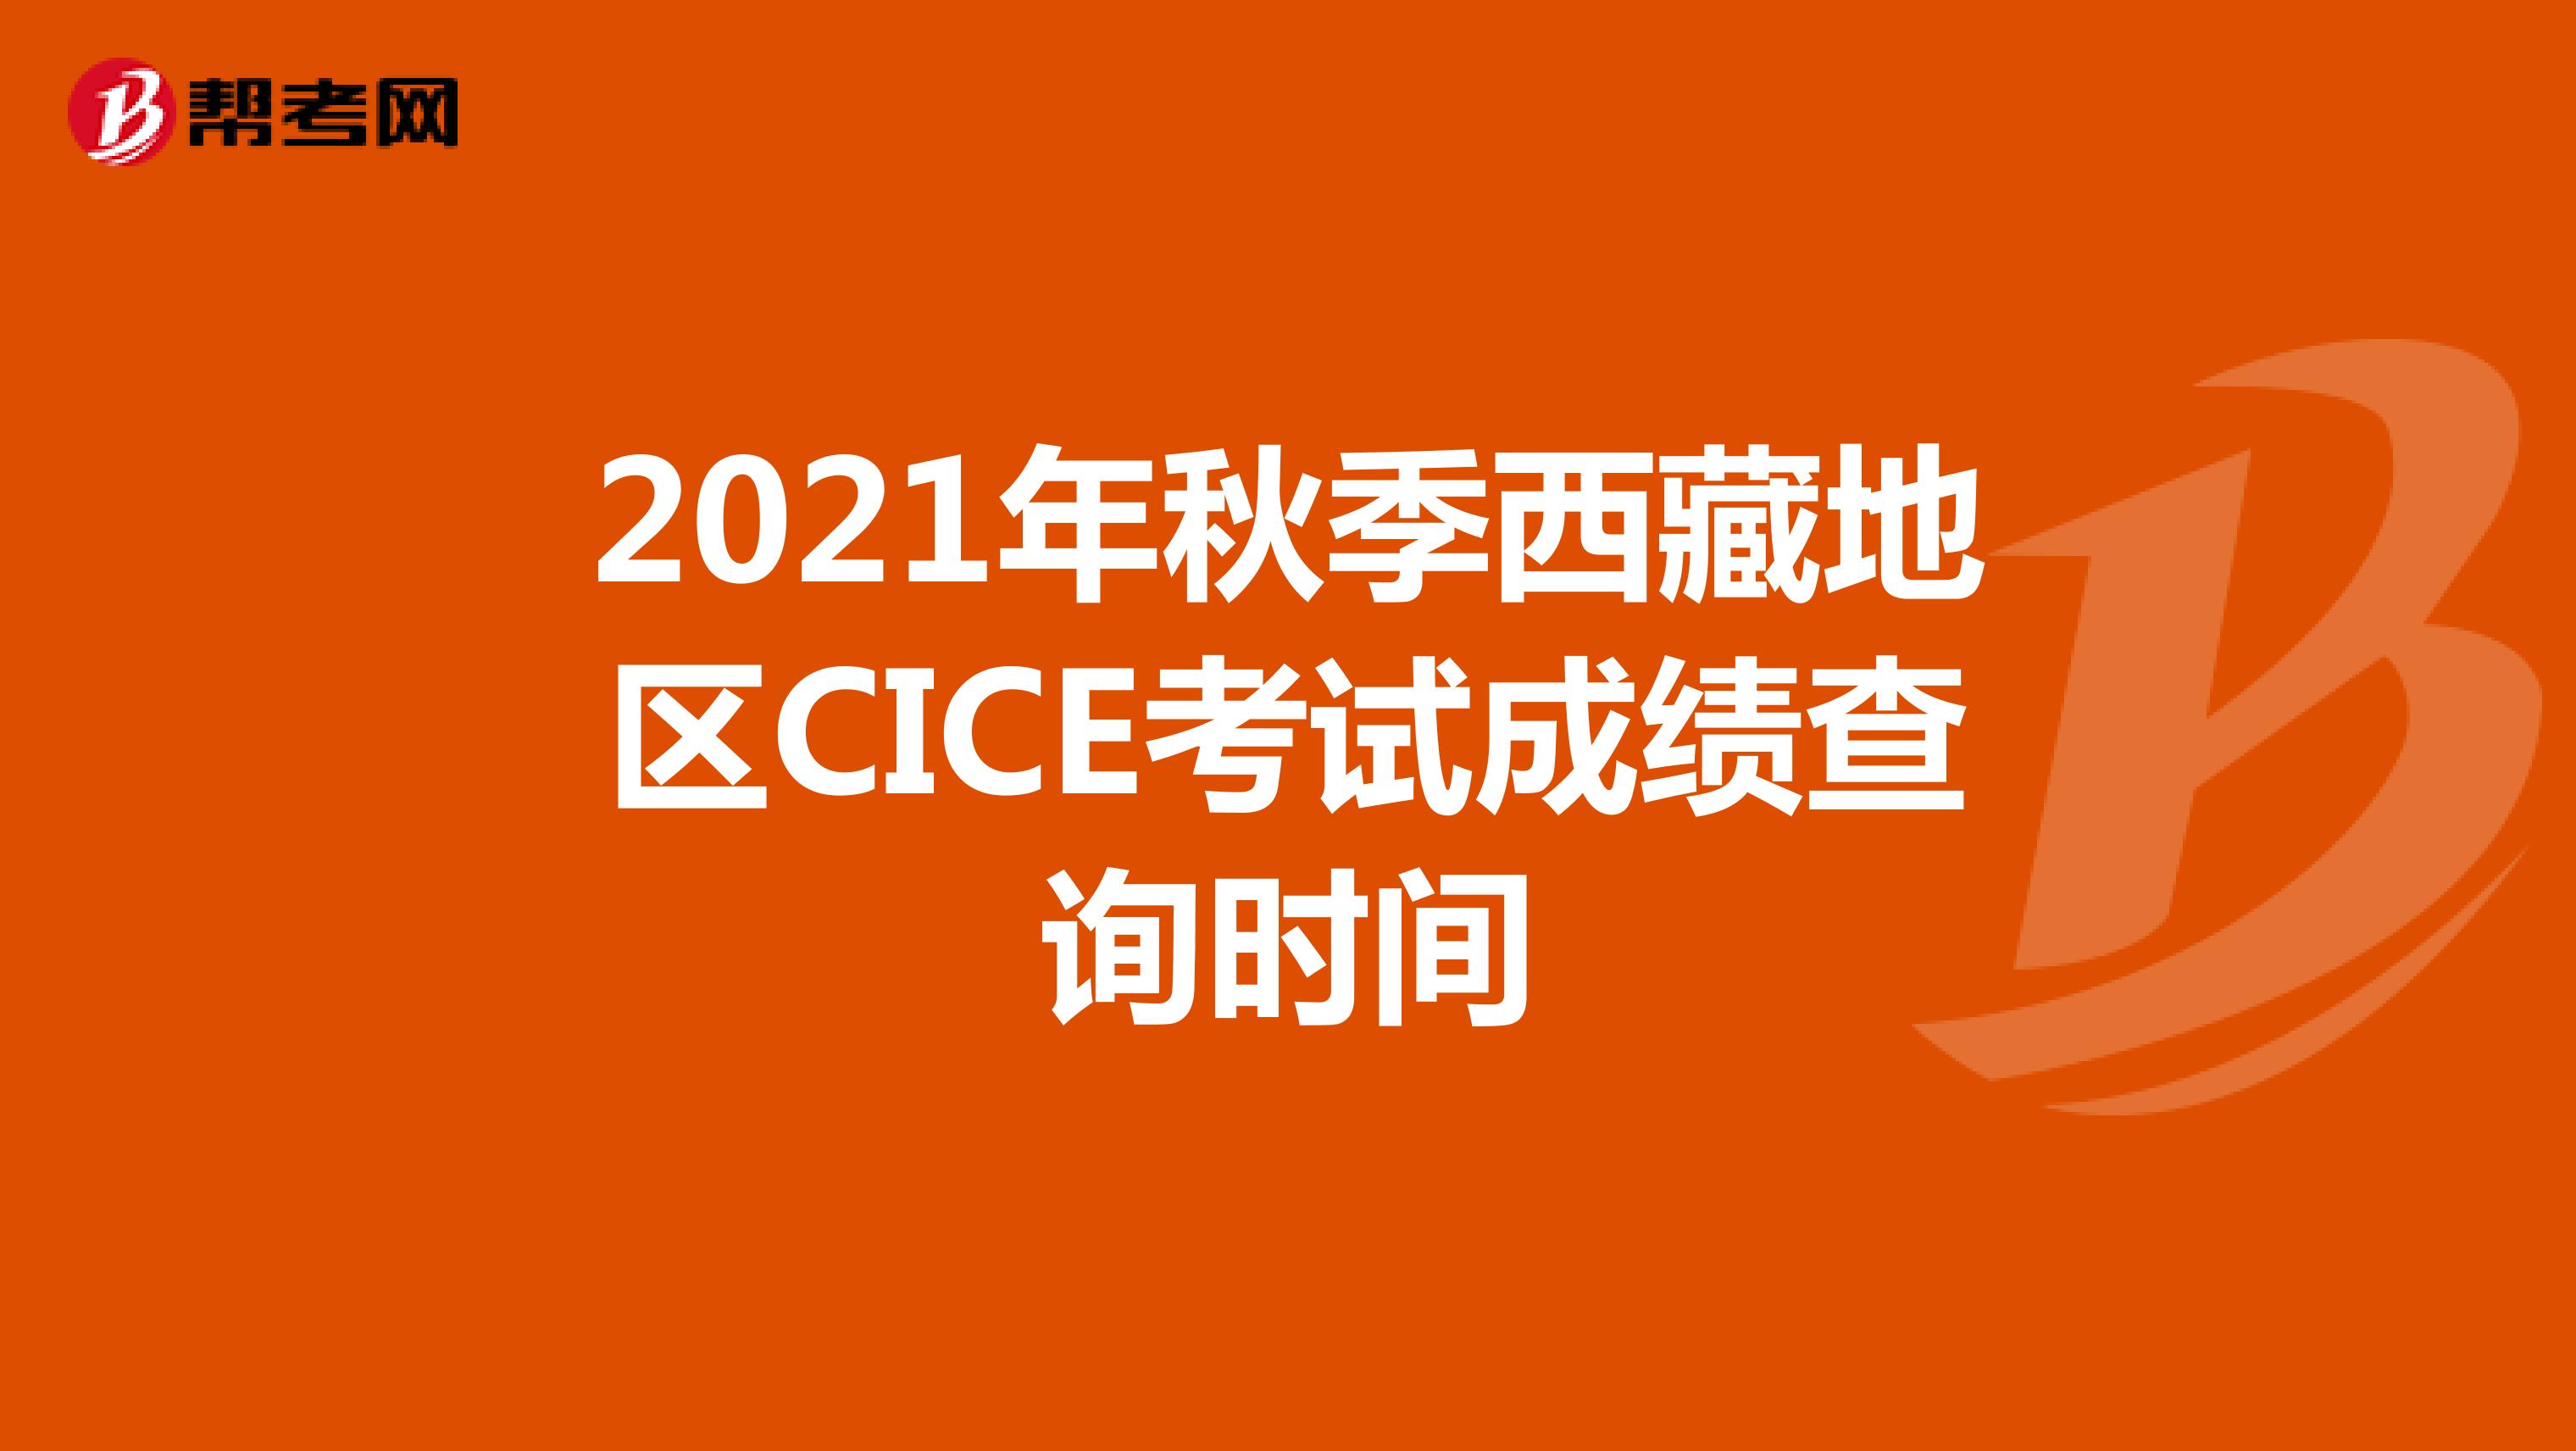 2021年秋季西藏地区CICE考试成绩查询时间